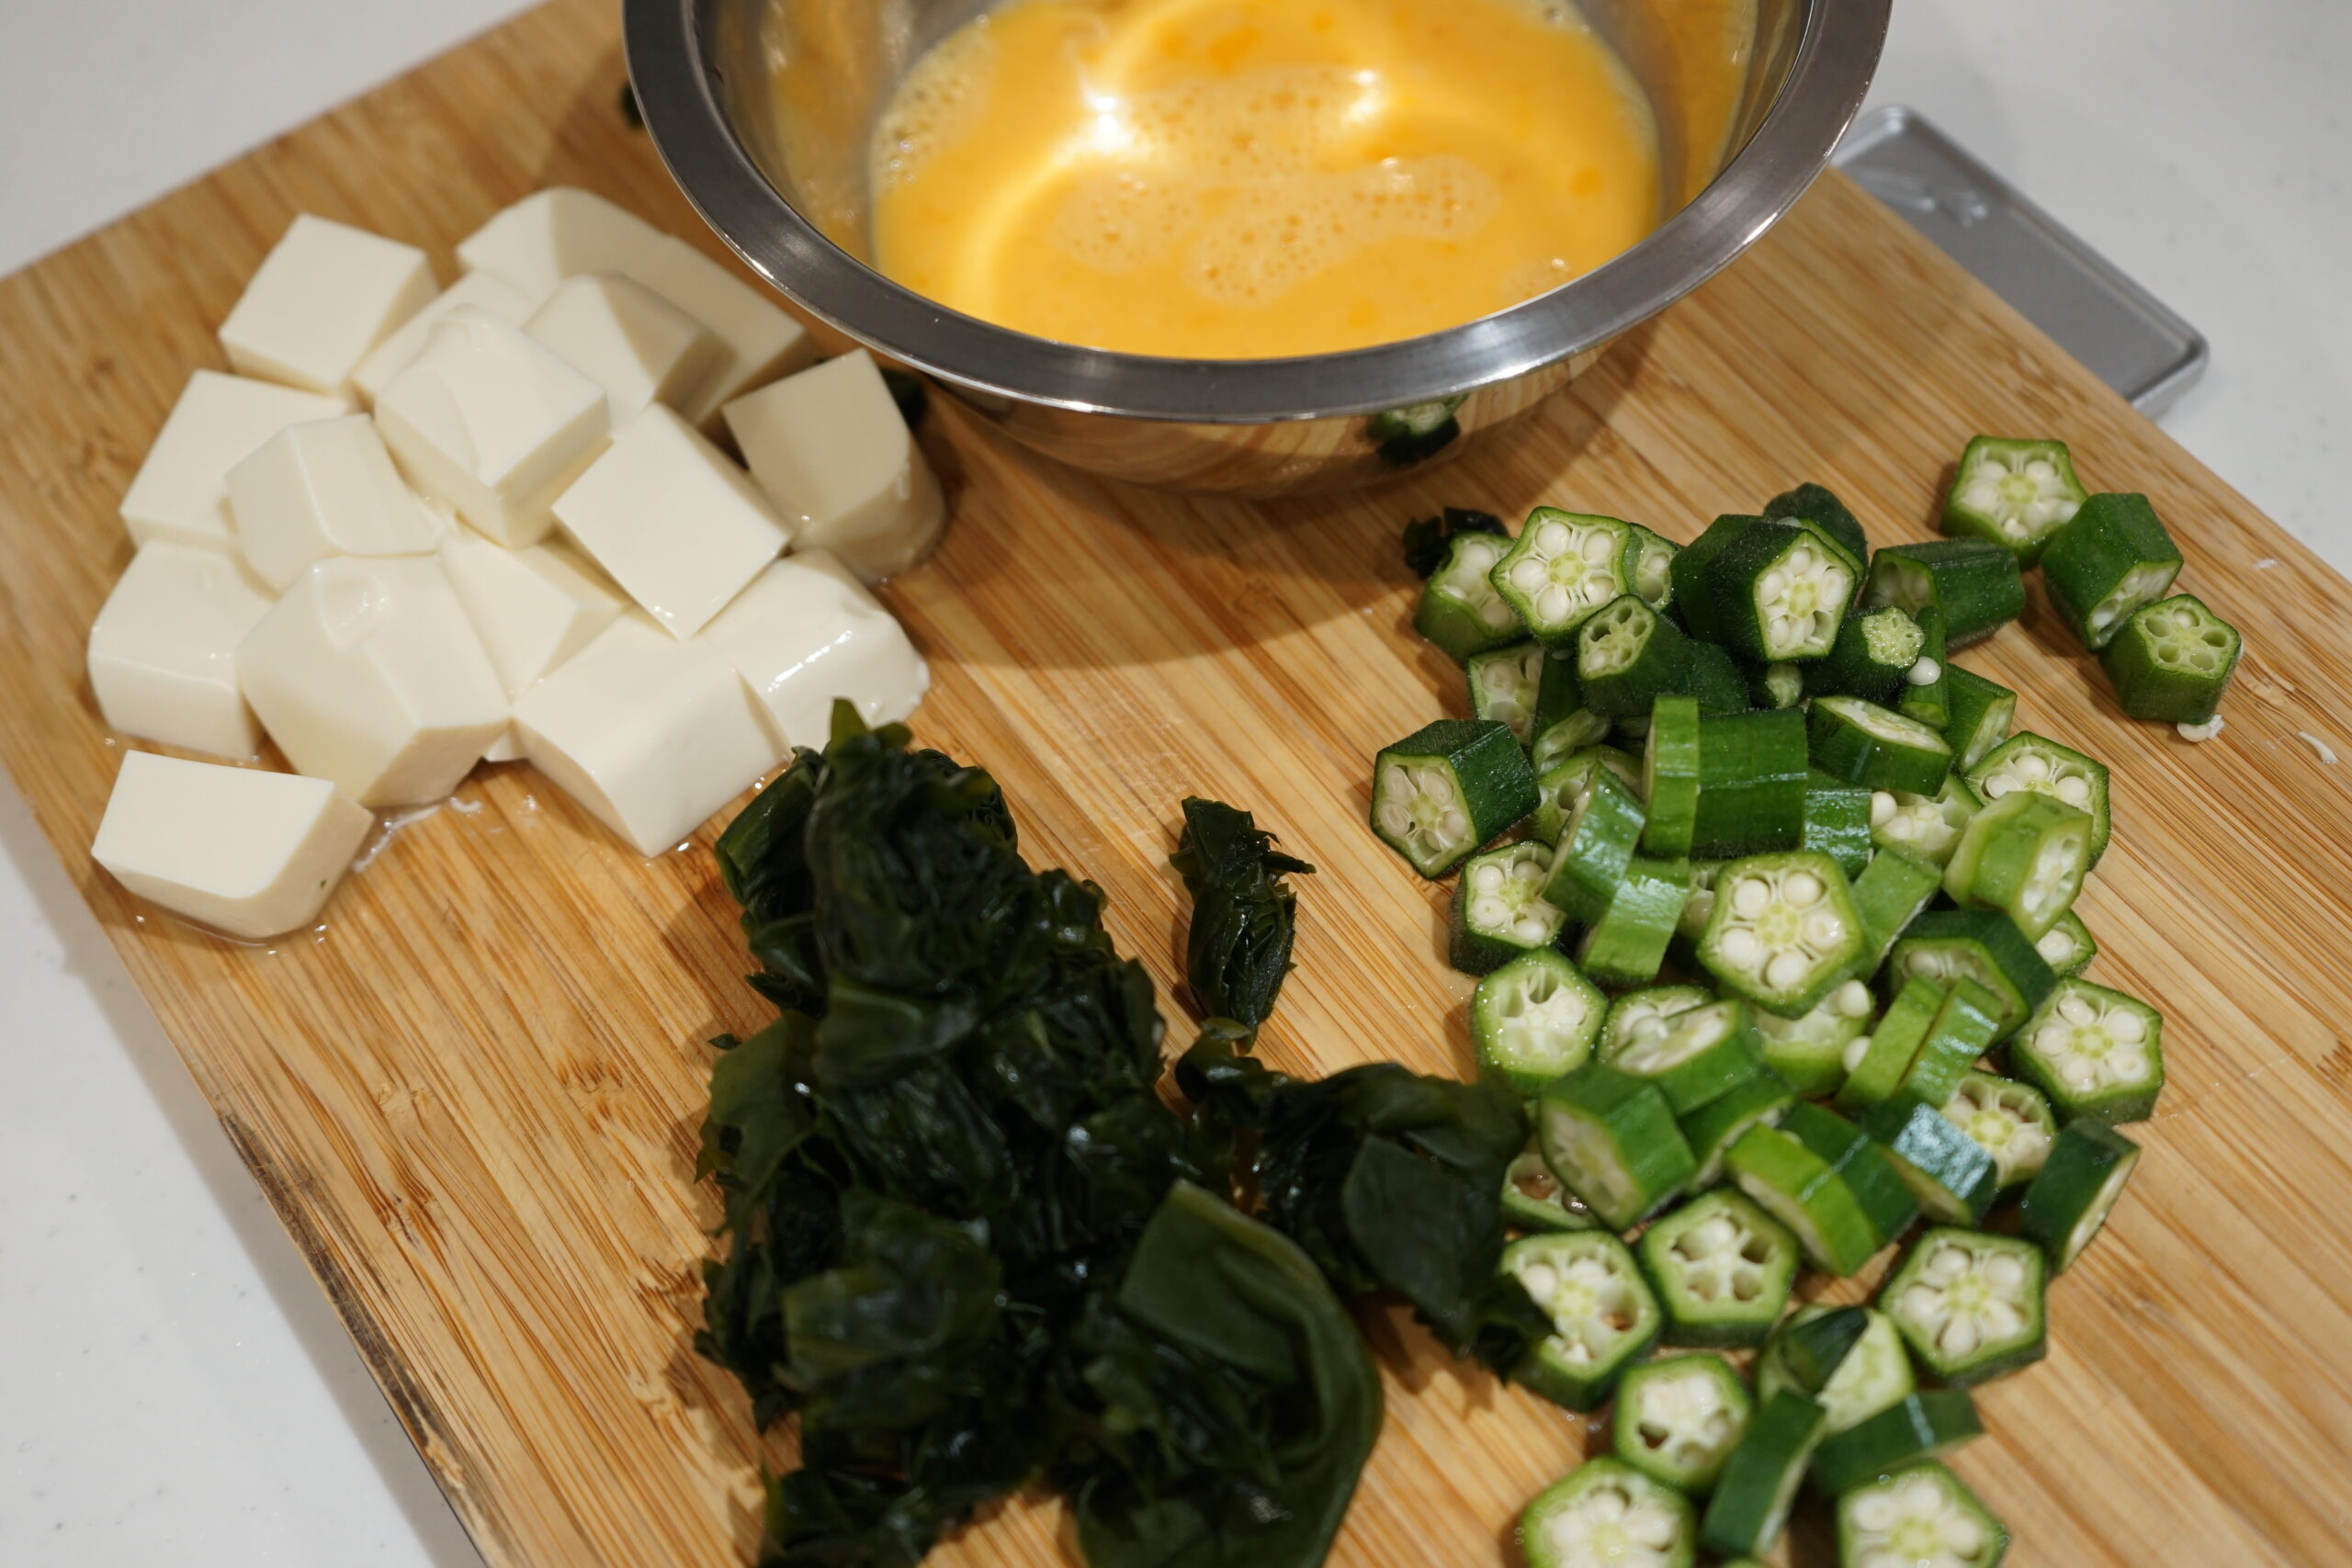 豆腐もわかめも一口サイズに切っておき、卵も溶いておきましょう。